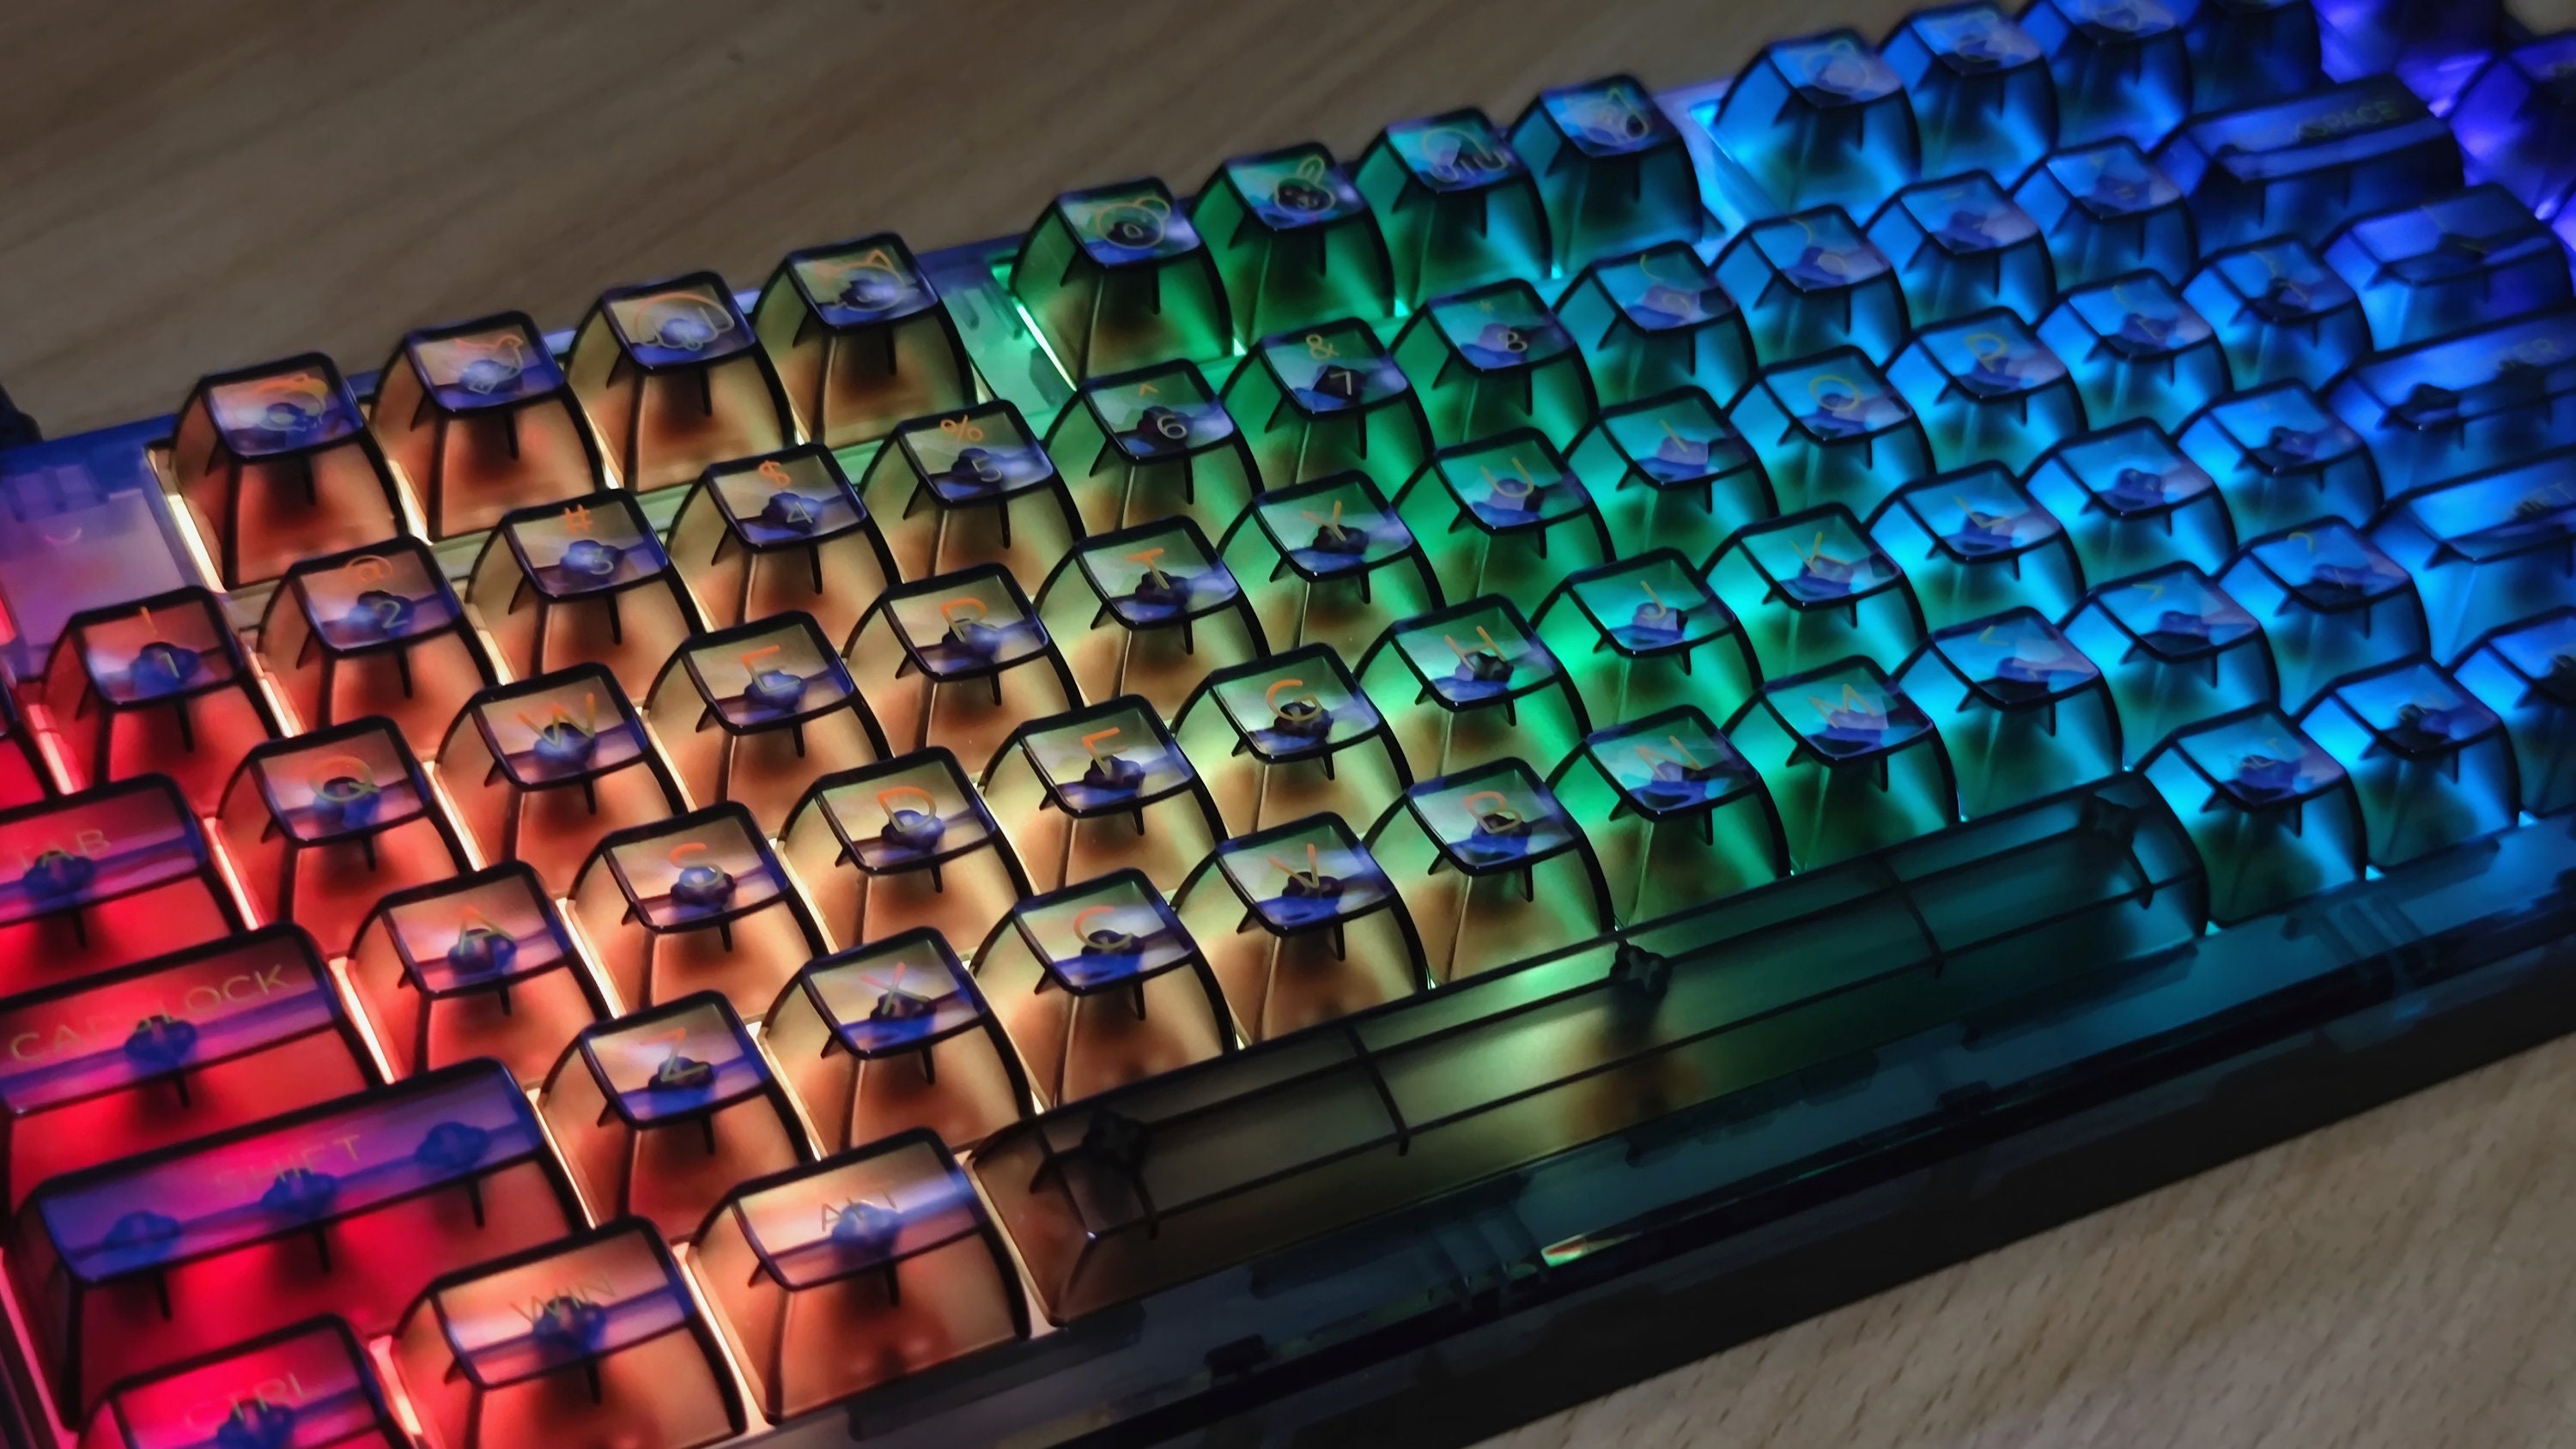 Tout savoir sur les Keycaps pour vos clavier gaming